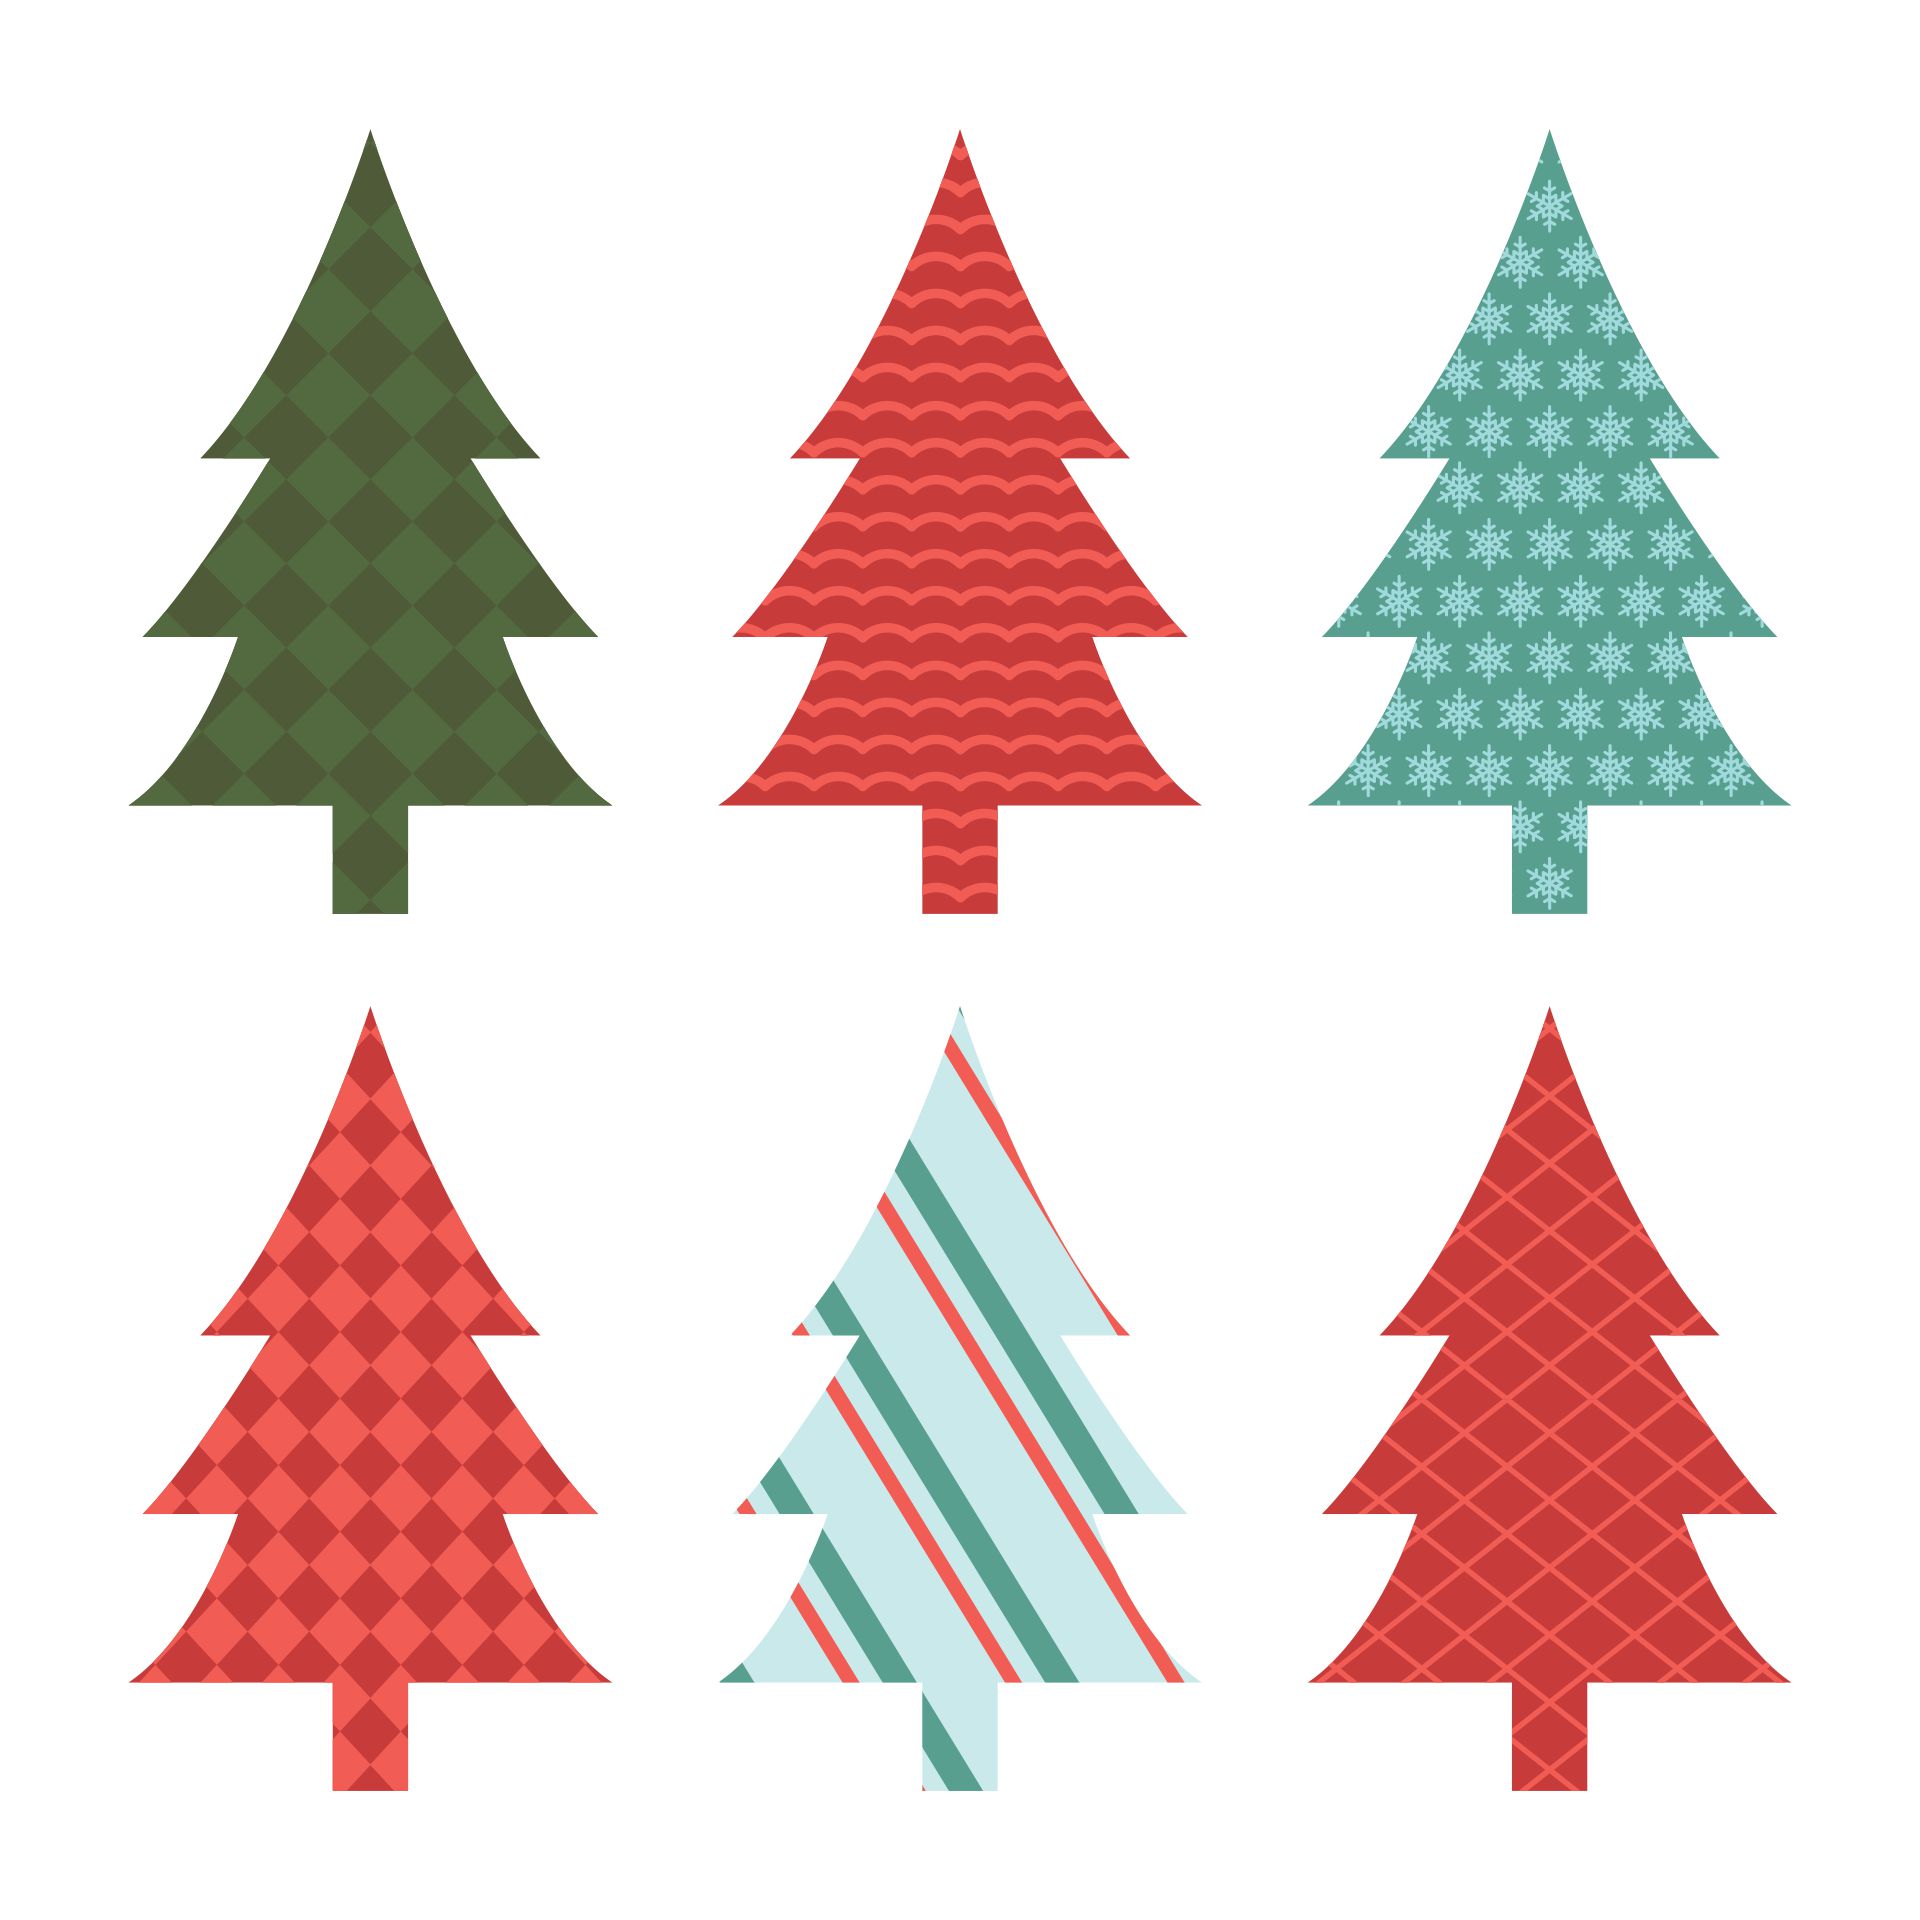 Plaid Christmas Tree Ornaments Printable